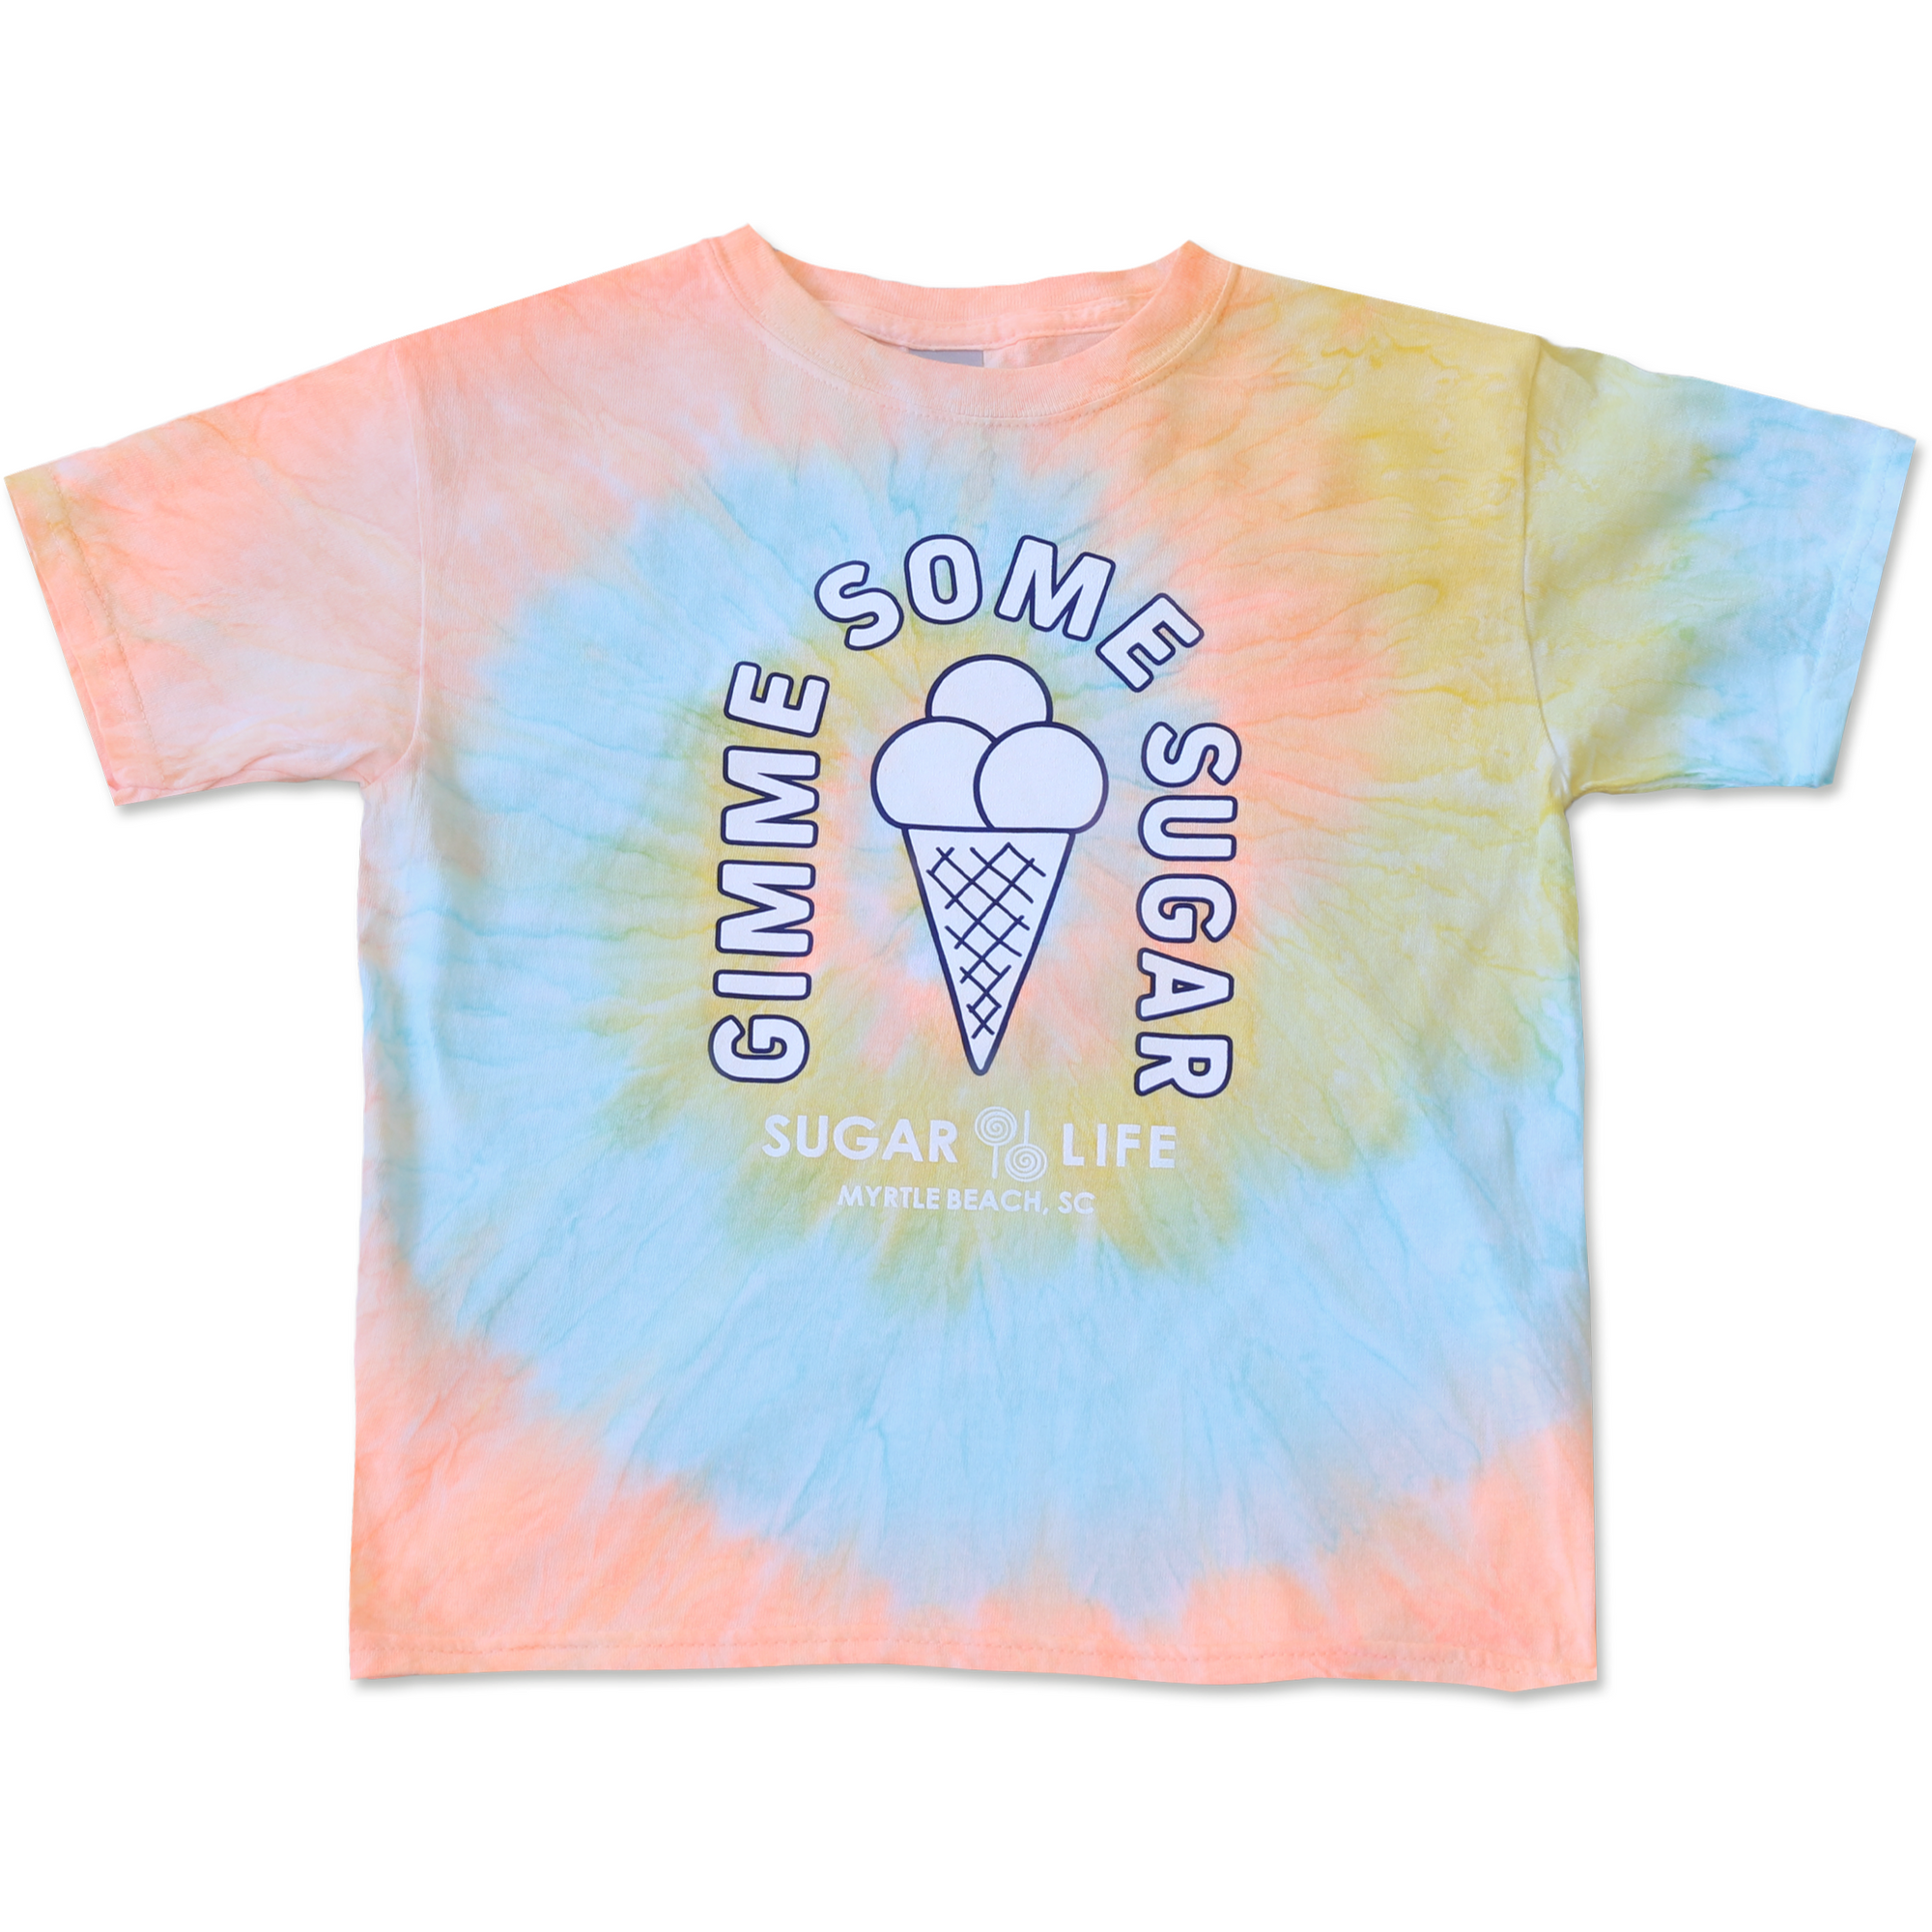 Gimme Some Sugar T-Shirt - Kids Apricot Sorbet Swirl Tie Dye